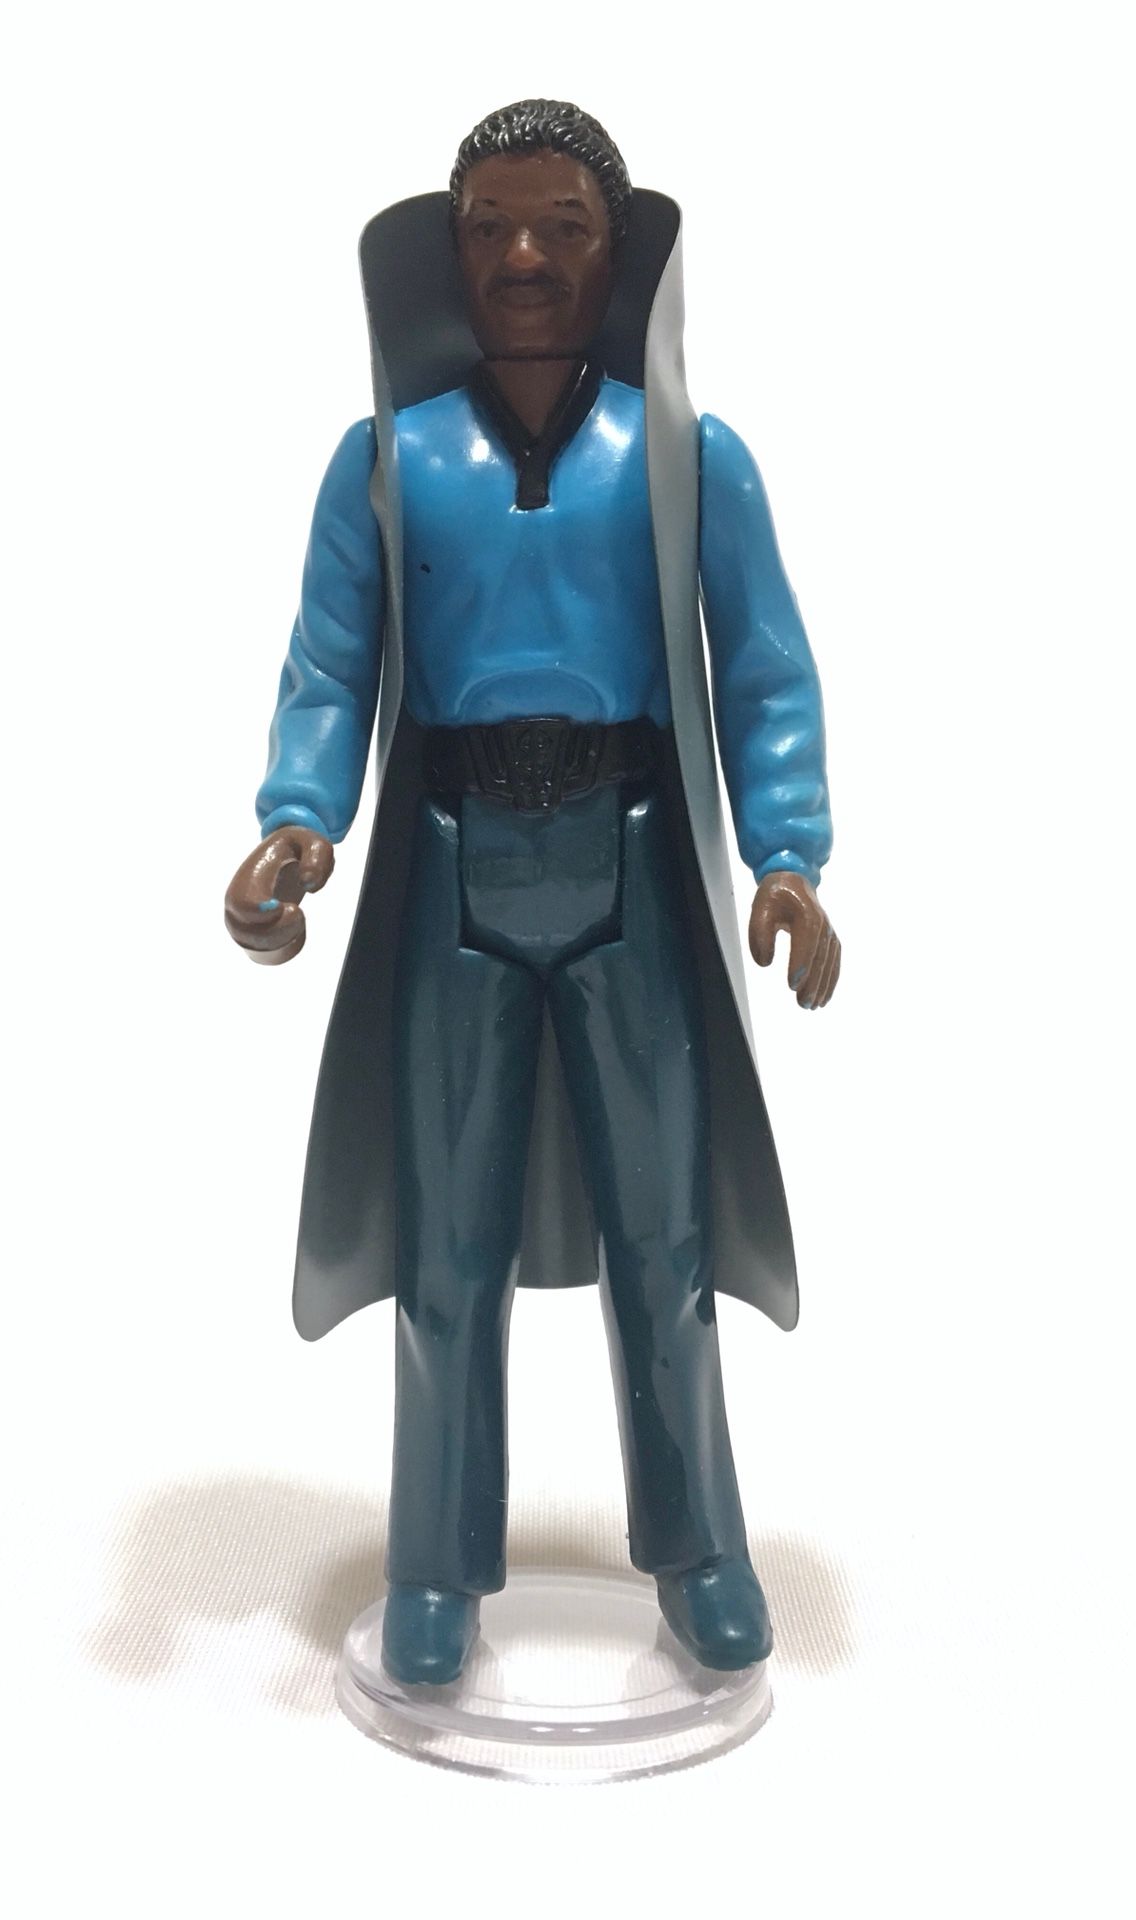 Vintage Kenner Star Wars Lando Calrissian action figures